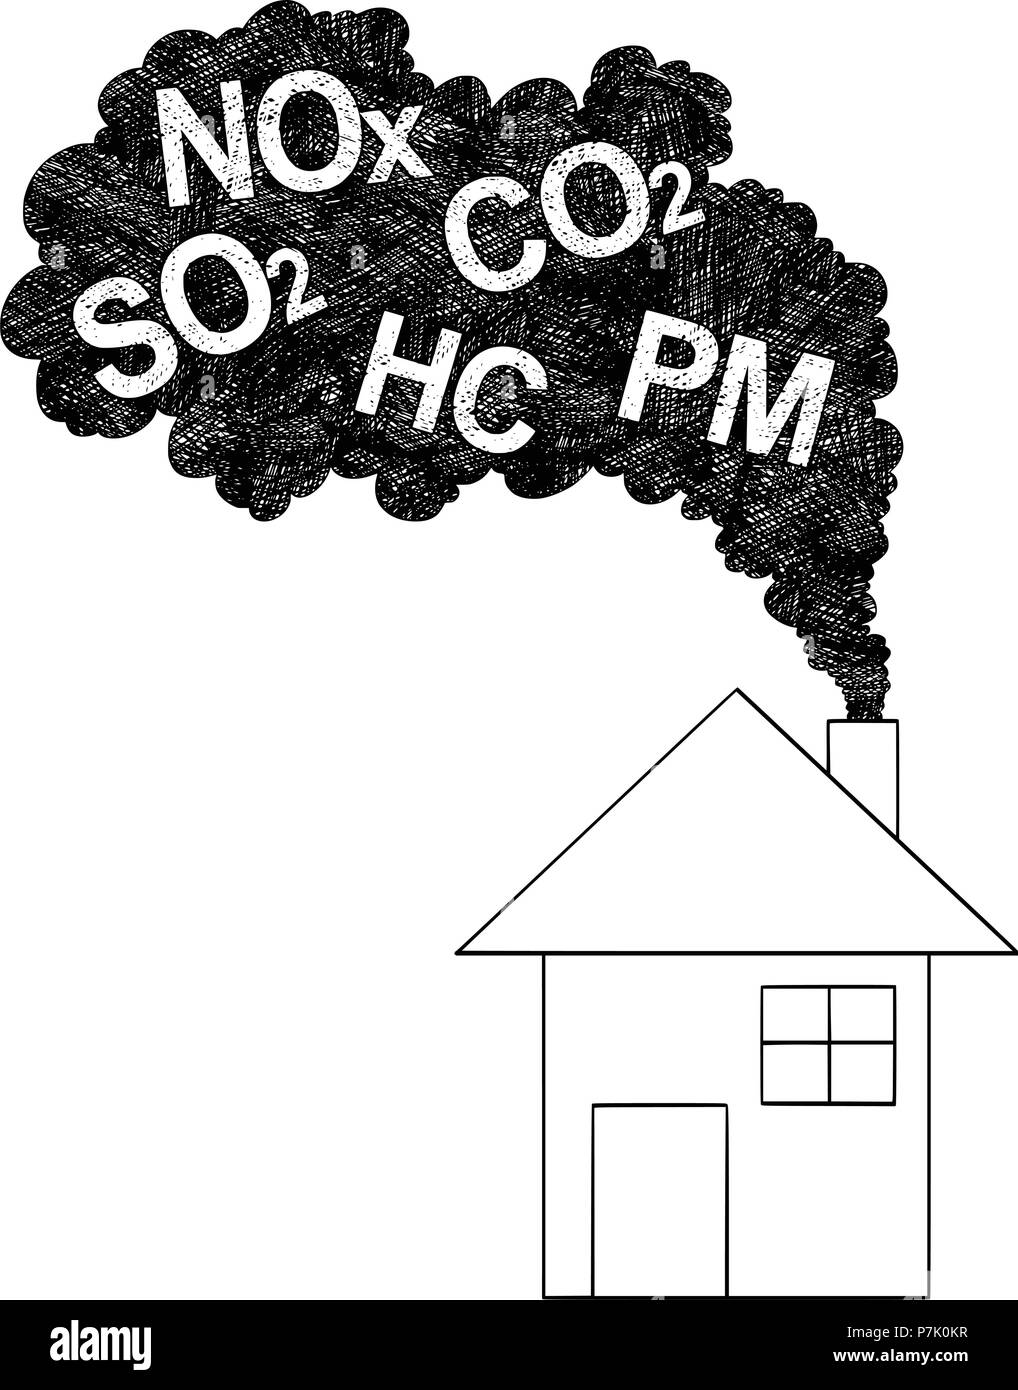 Dessin Artistique vecteur Illustration de la cheminée de fumée provenant de la pollution de l'air, Concept Illustration de Vecteur